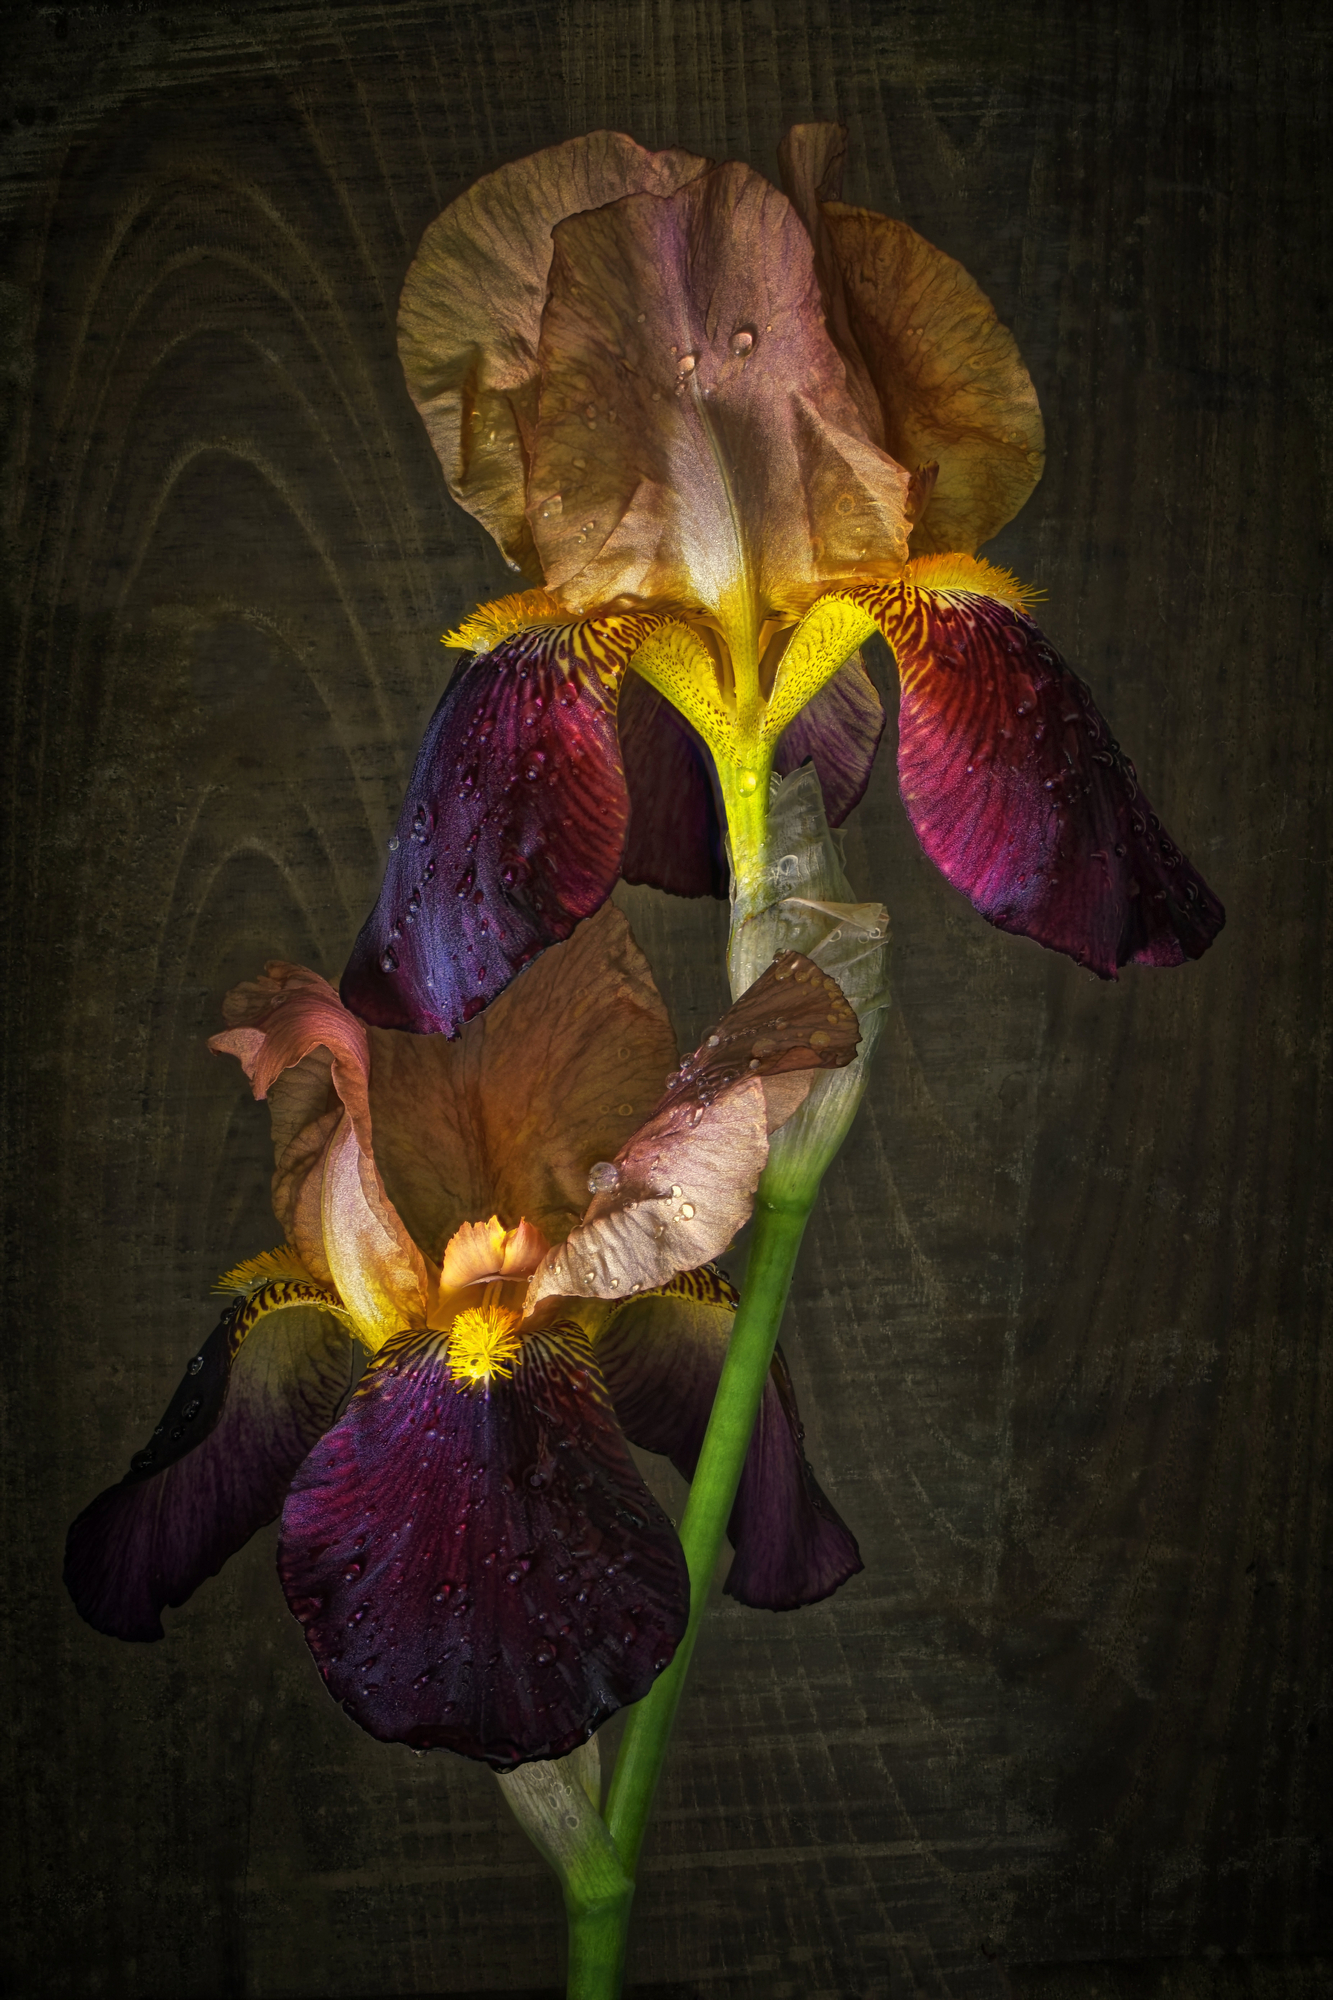 Romantic irises...